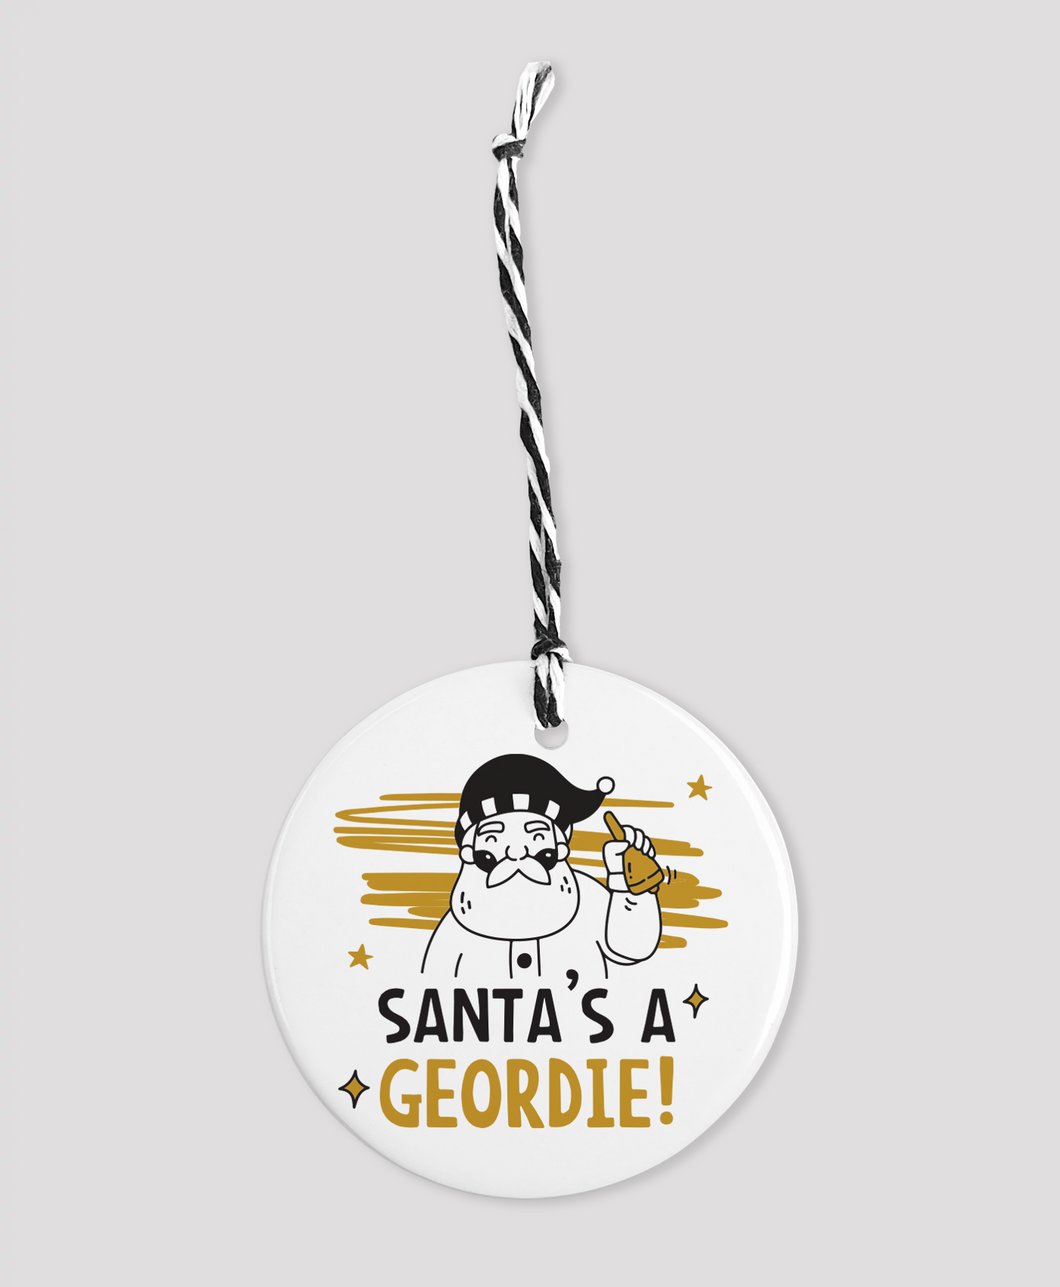 Santa's a Geordie! - Bauble